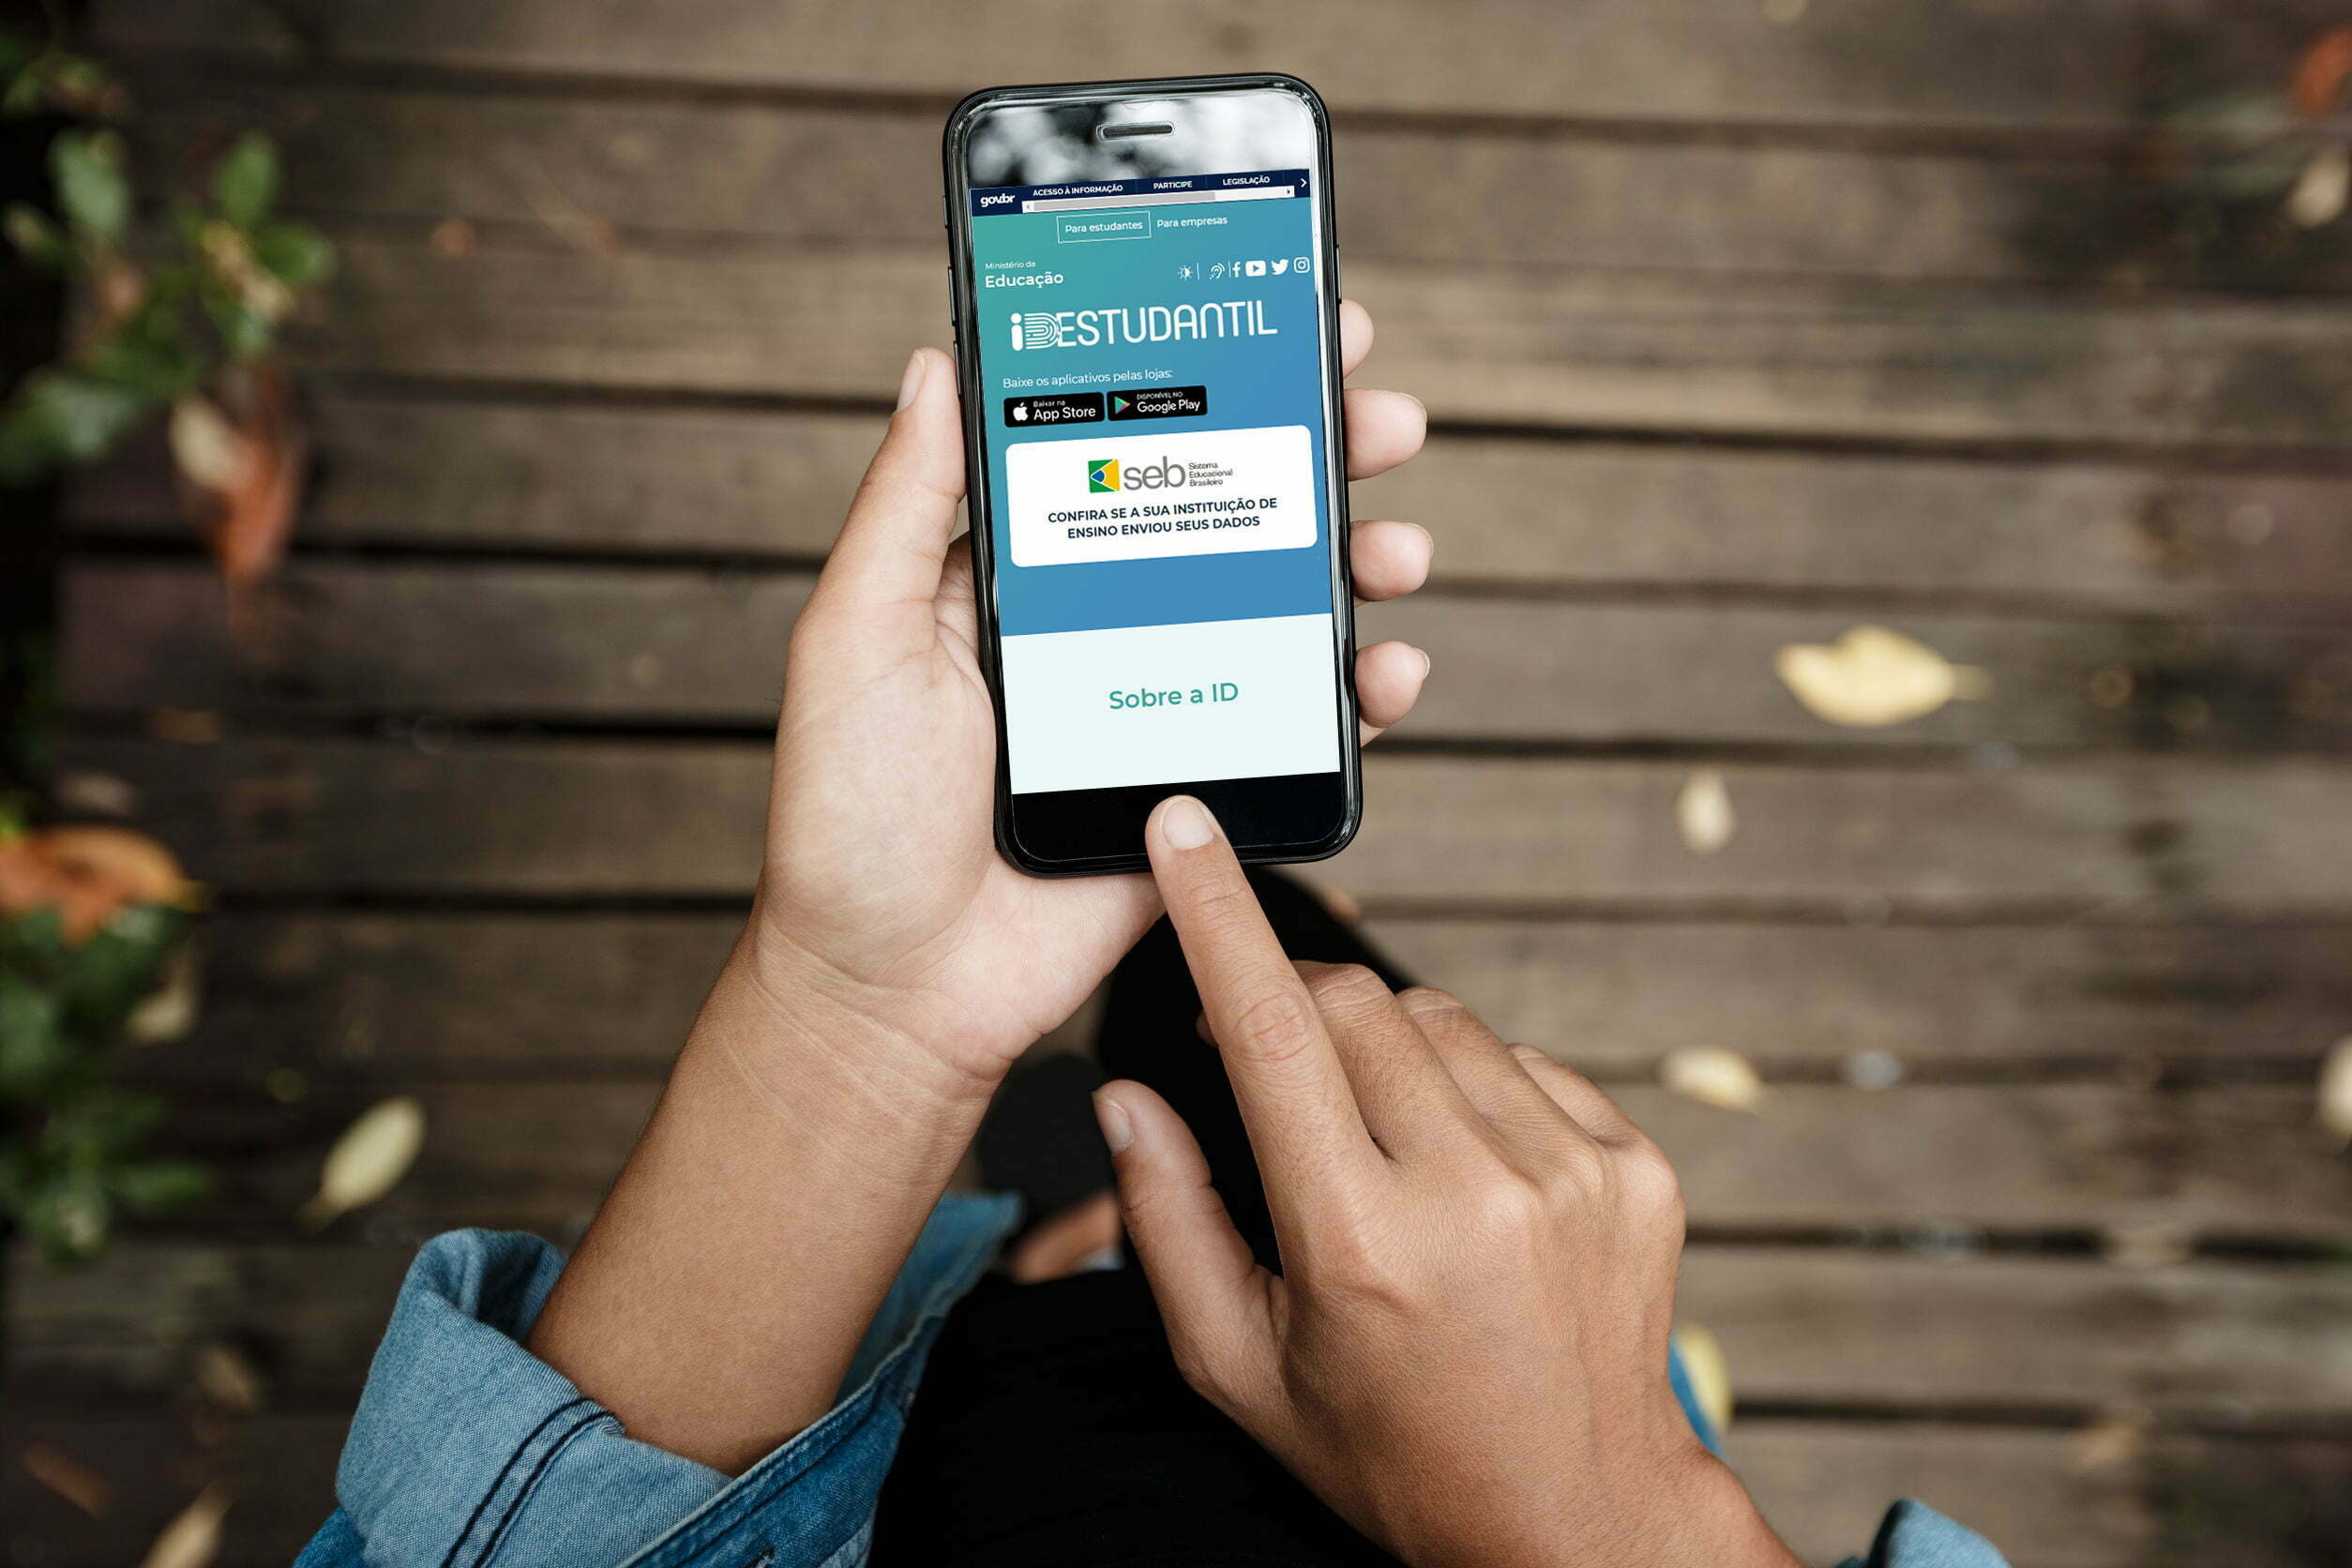 MEC lança aplicativo para emitir a carteirinha de estudante digital, Educação